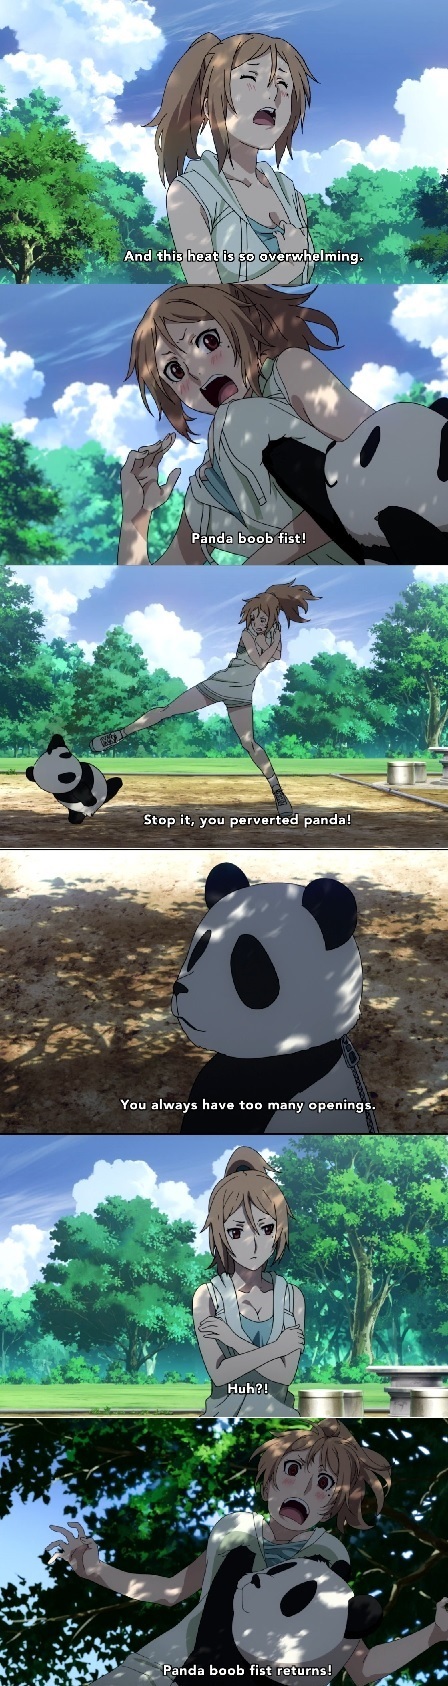 Panda boob fist :3 - meme